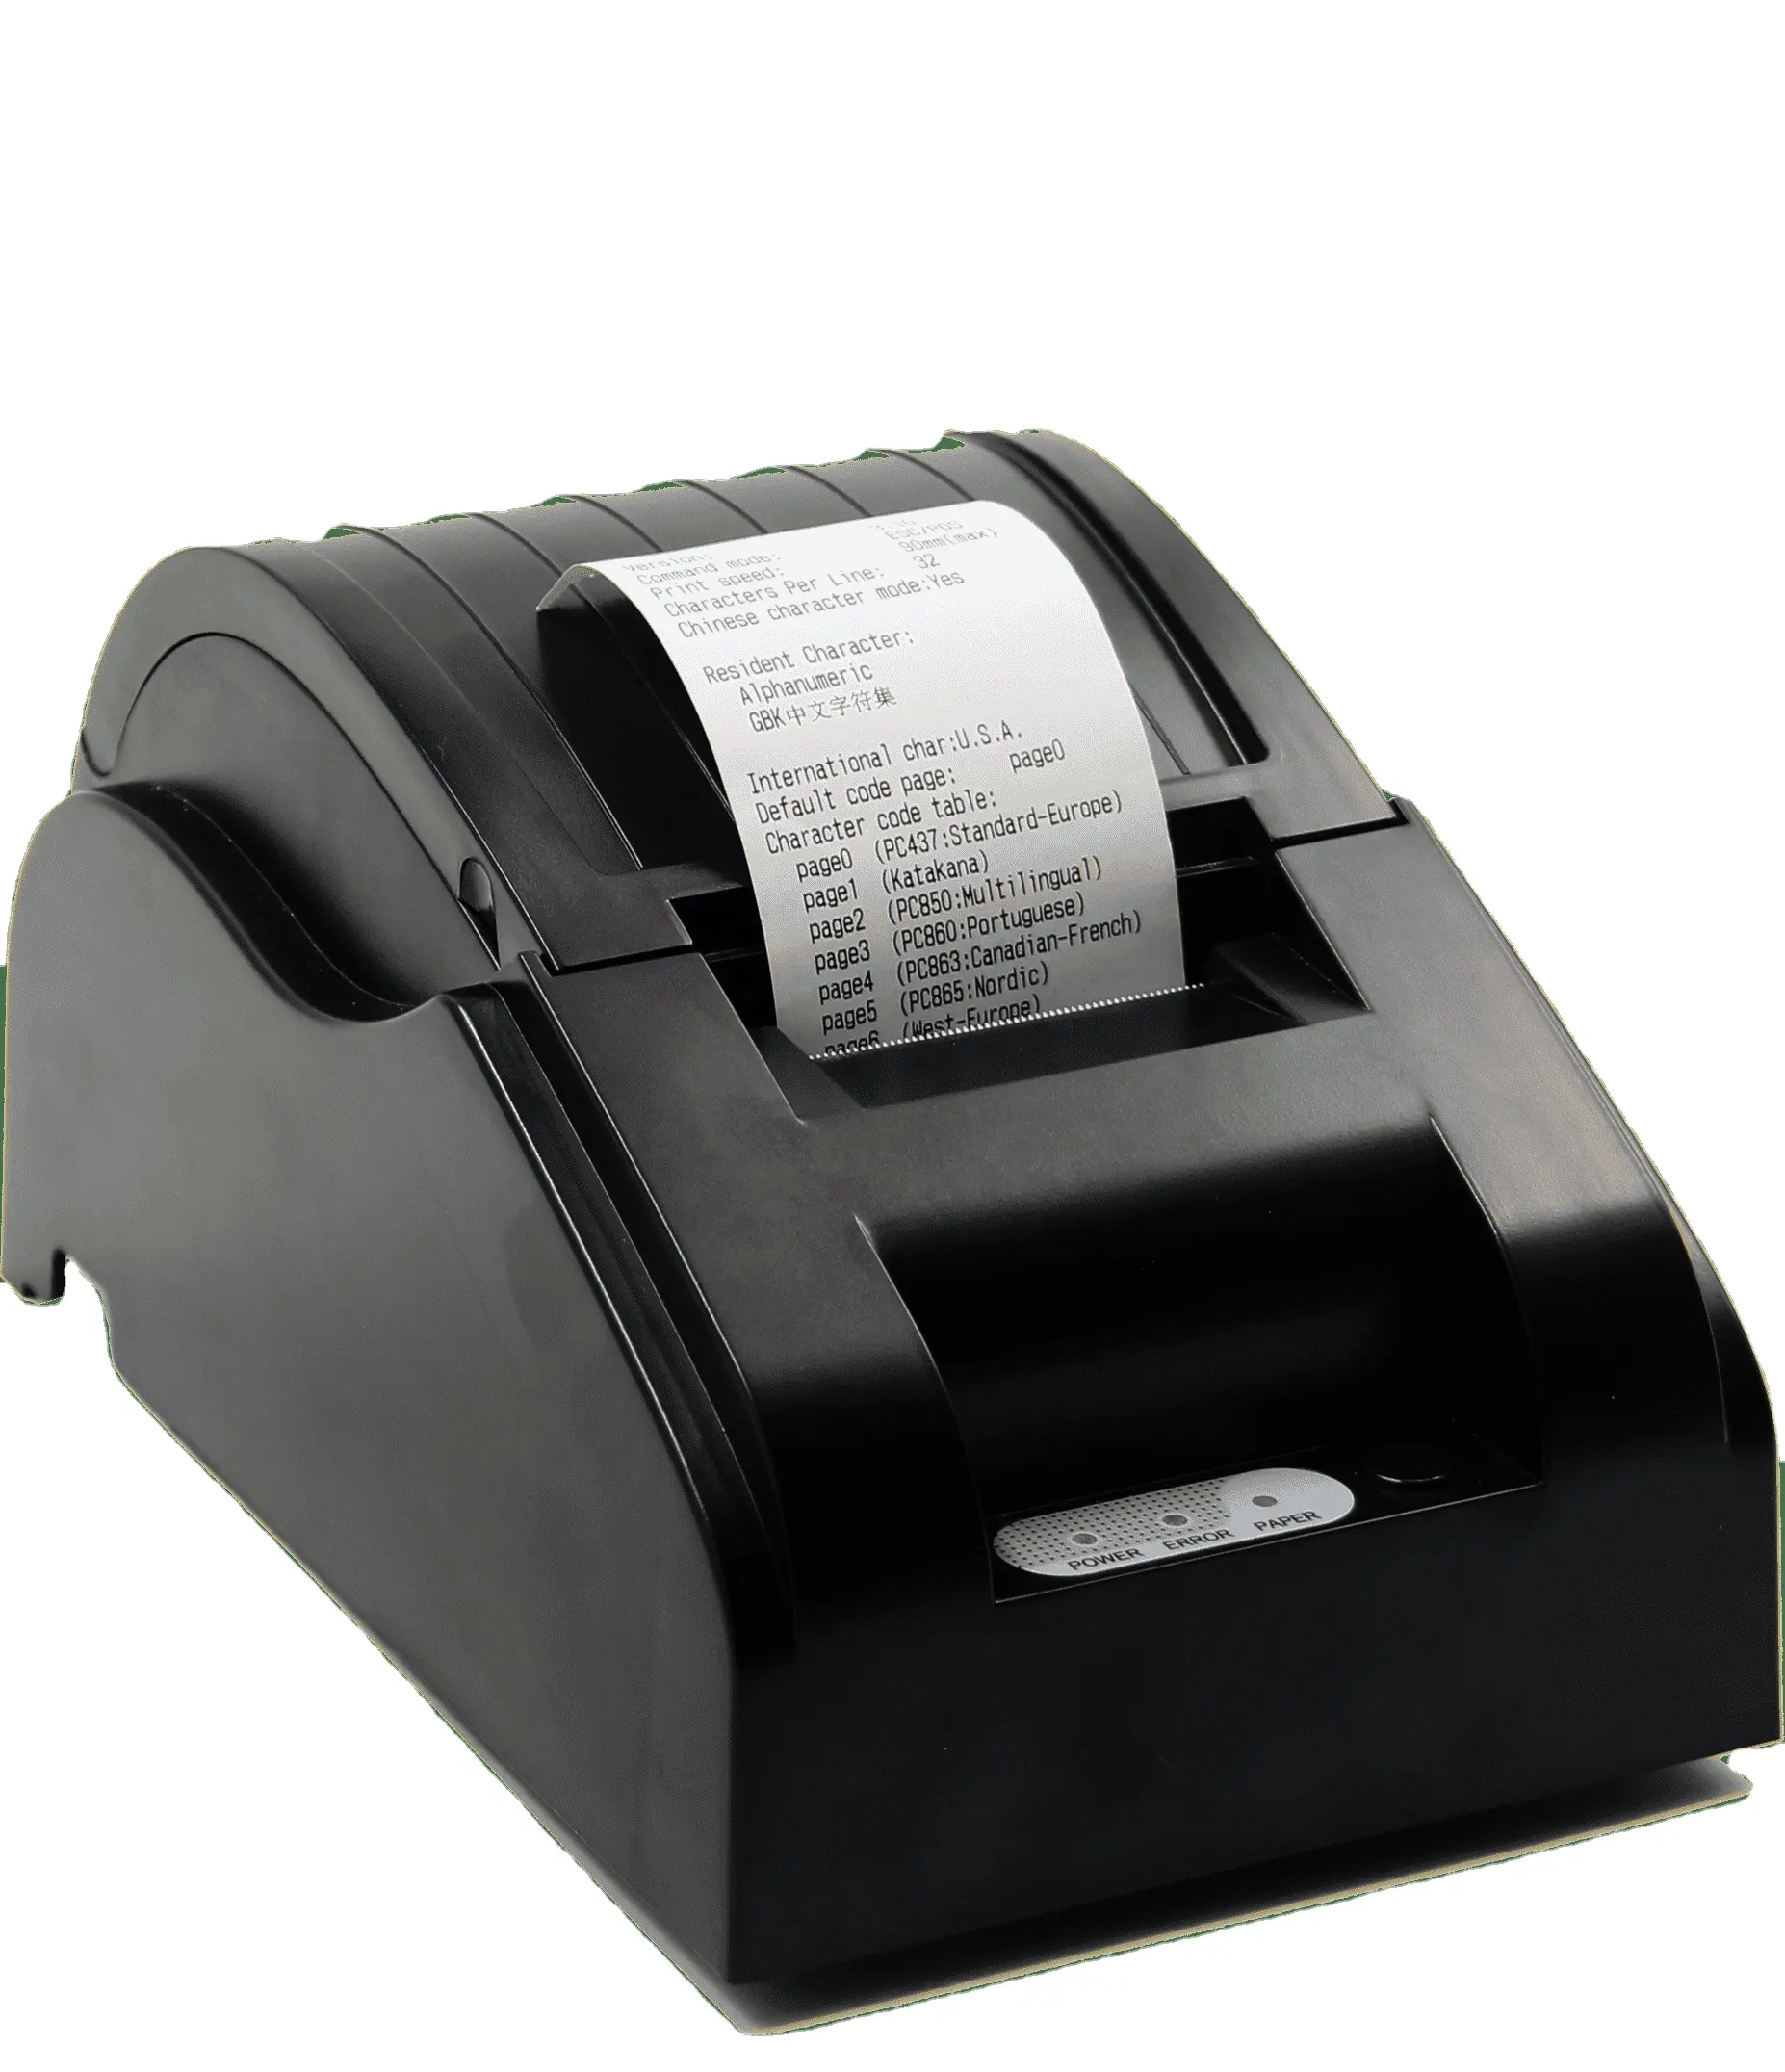 하이 퀄리티 5890 휴대용 열전사 프린터 빠른 인쇄 속도 사용자 친화적 인 인터페이스 컴팩트 크기